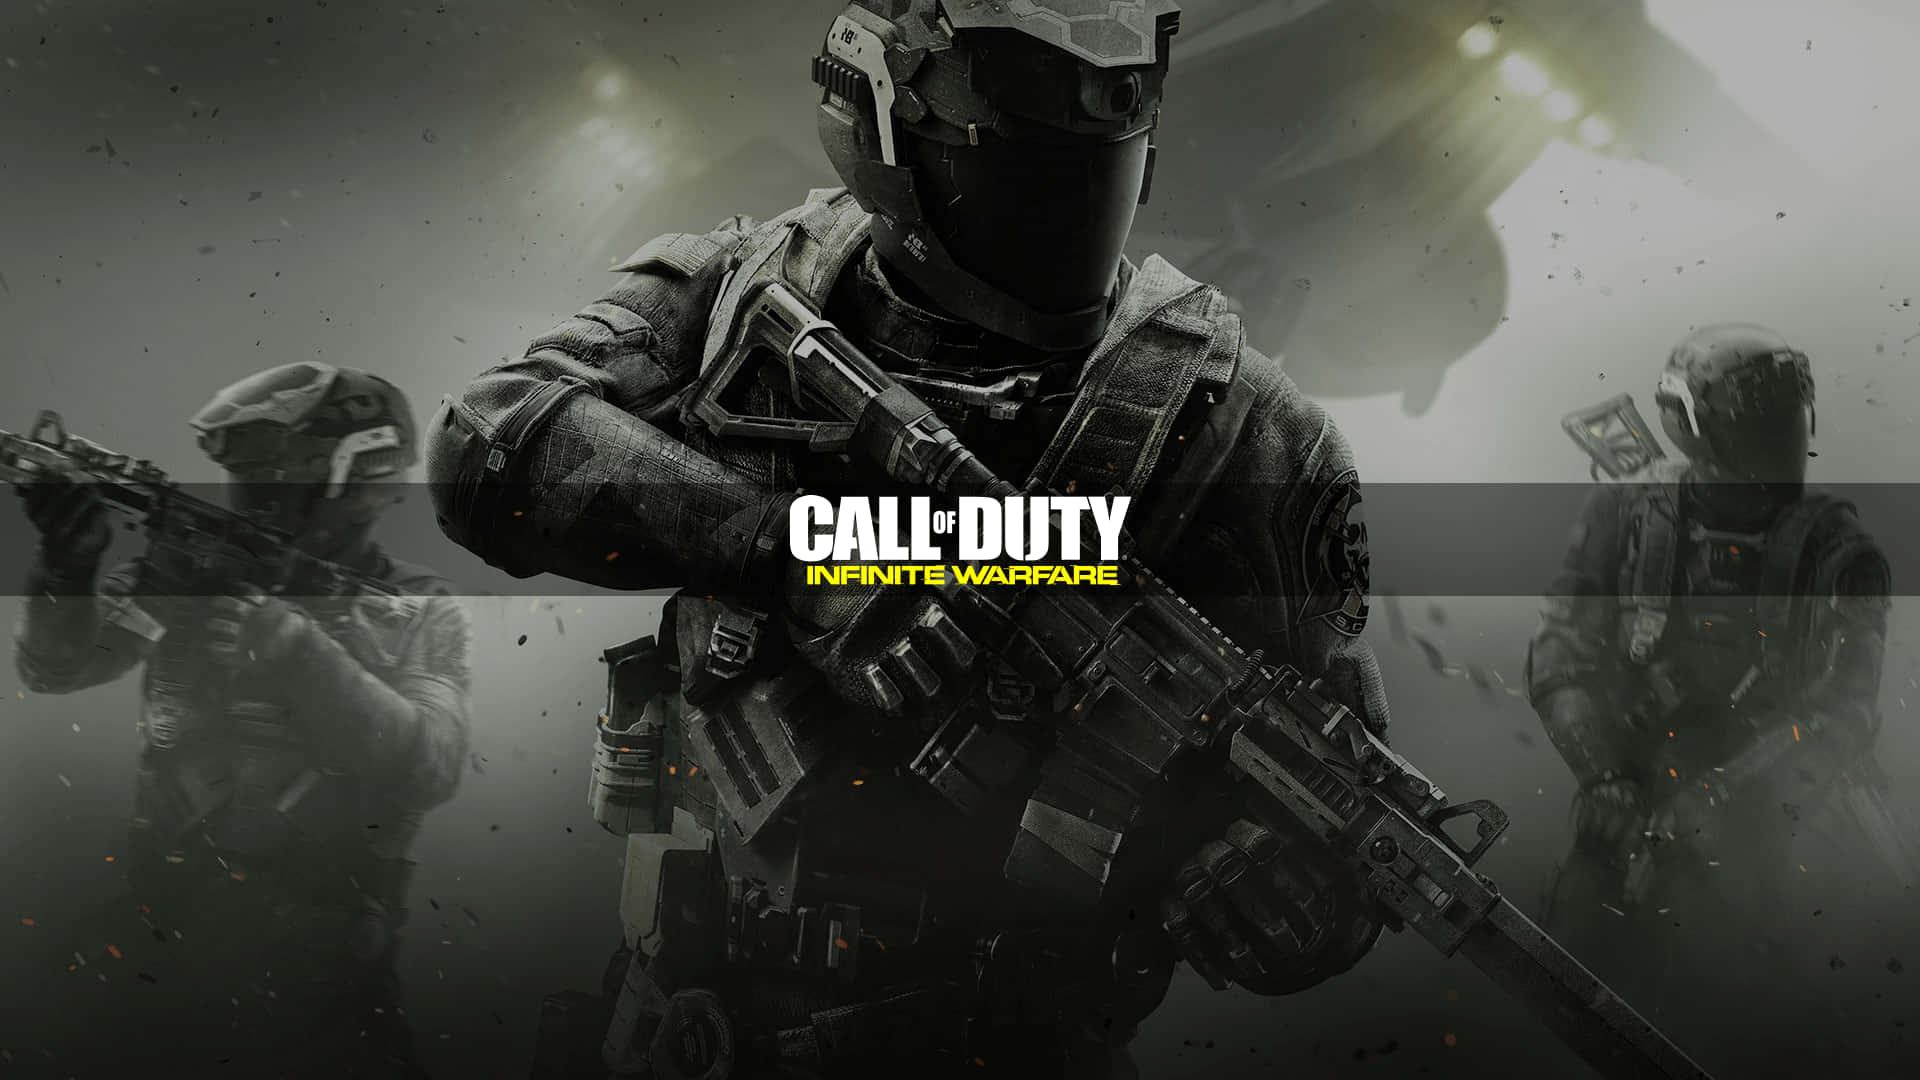 Kald af Duty Black Ops 2 PC - PC - PC - PC - PC - PC Wallpaper